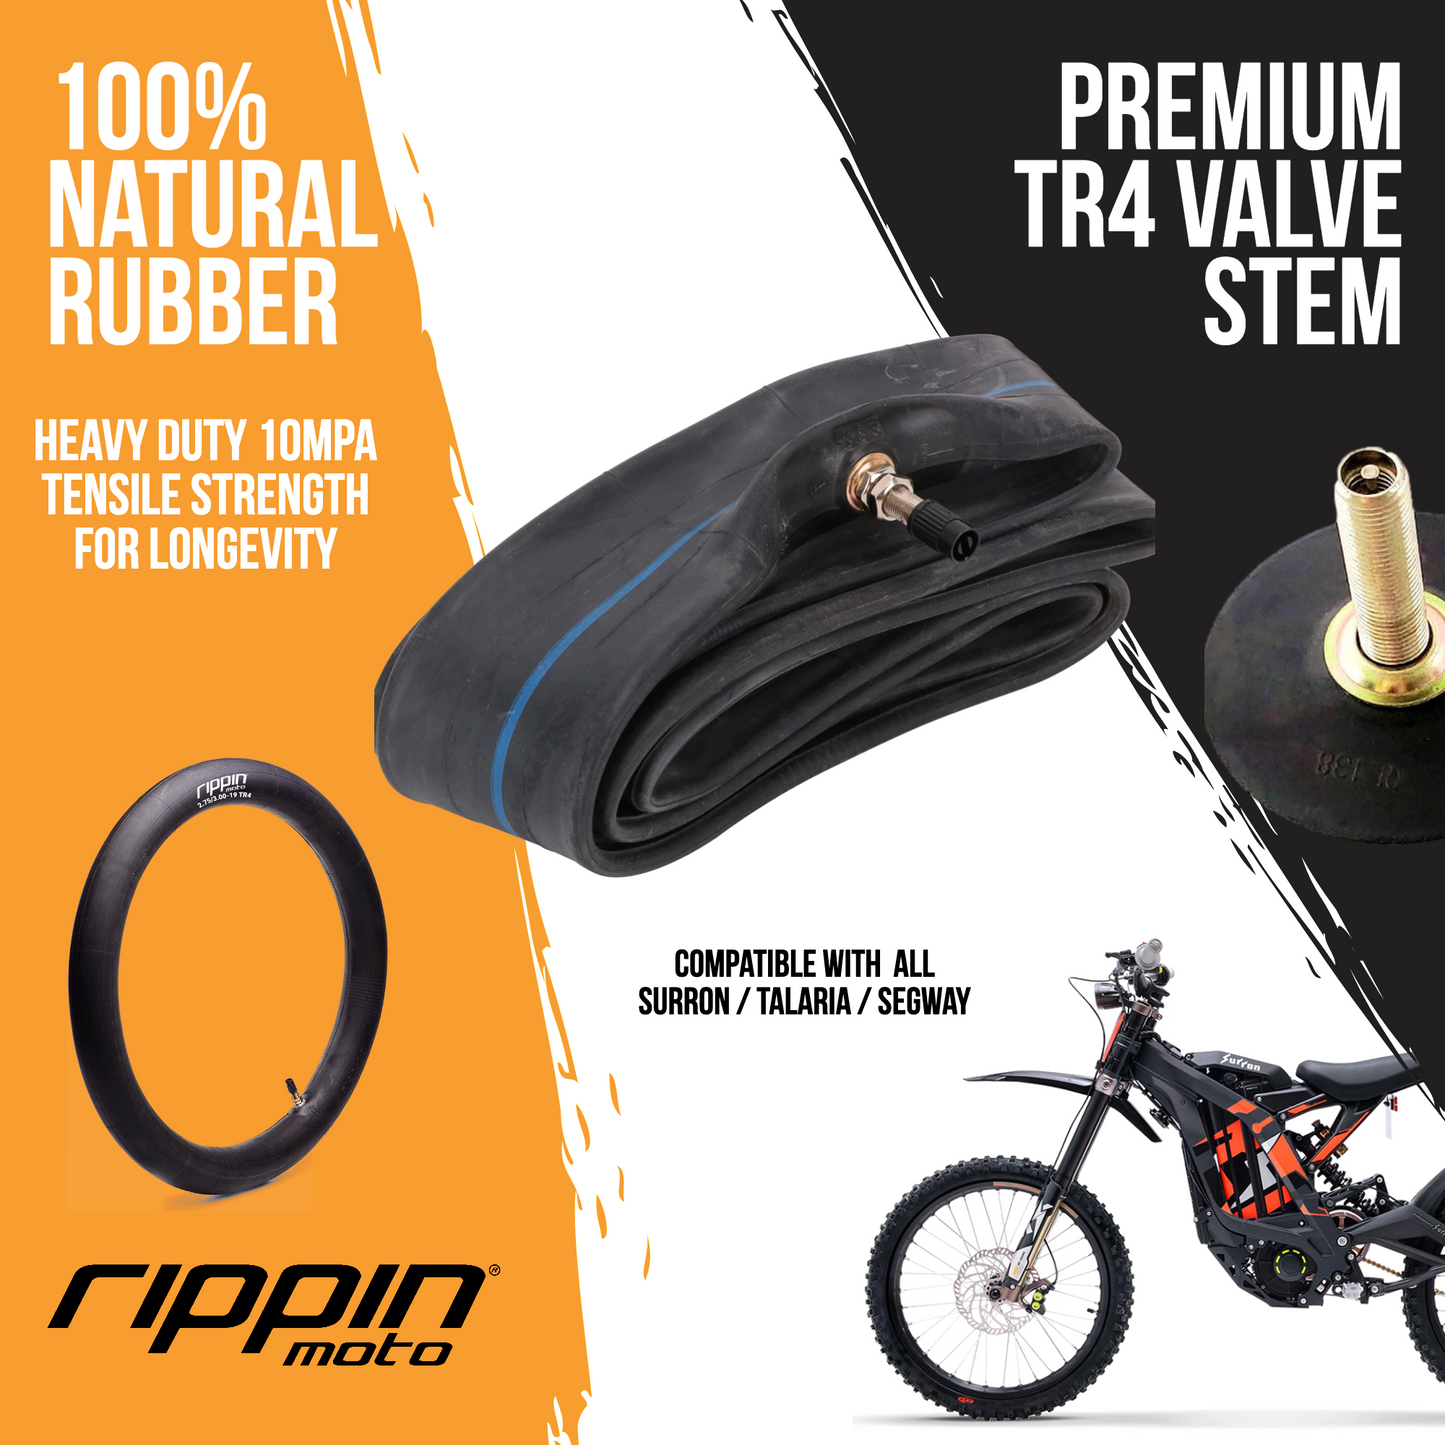 Rippin Moto 2.75/3.00-19 (70/100-19) Heavy Duty Motorcycle & E-Moto Inner Tube (For Surron & Talaria) - REVRides